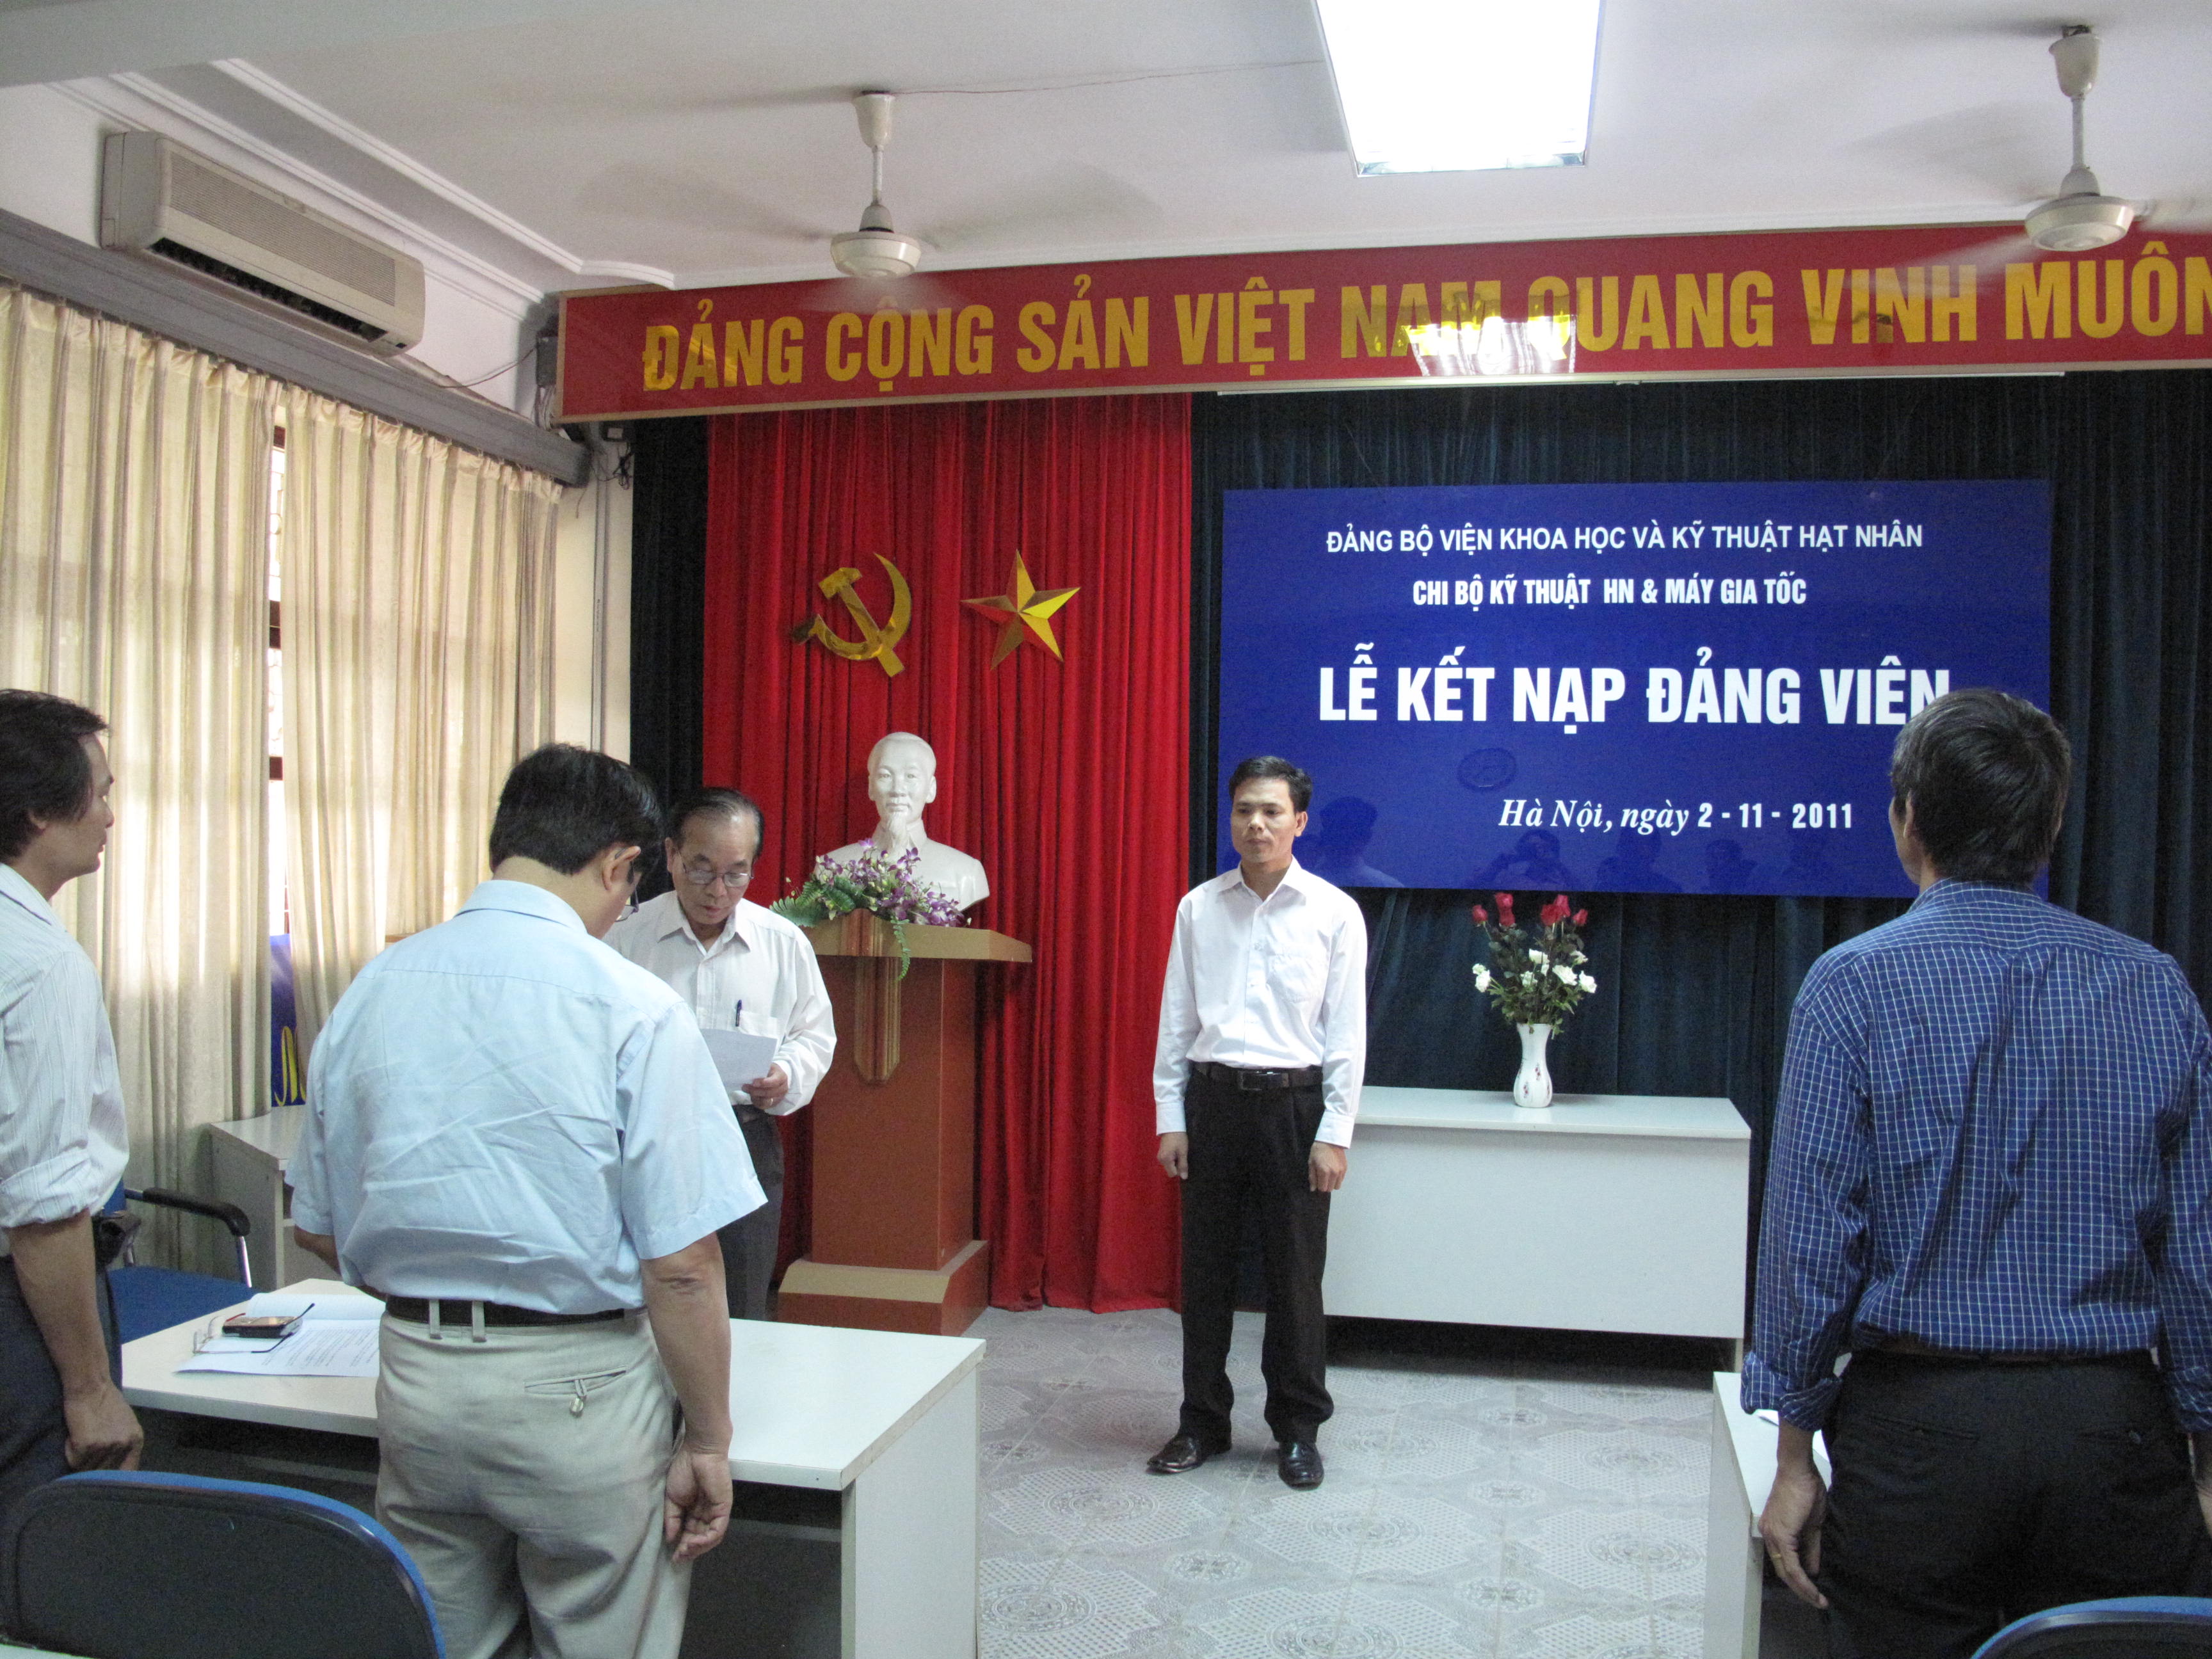 Đồng chí Nguyễn Văn Sỹ lên nhận quyết định kết nạp Đảng